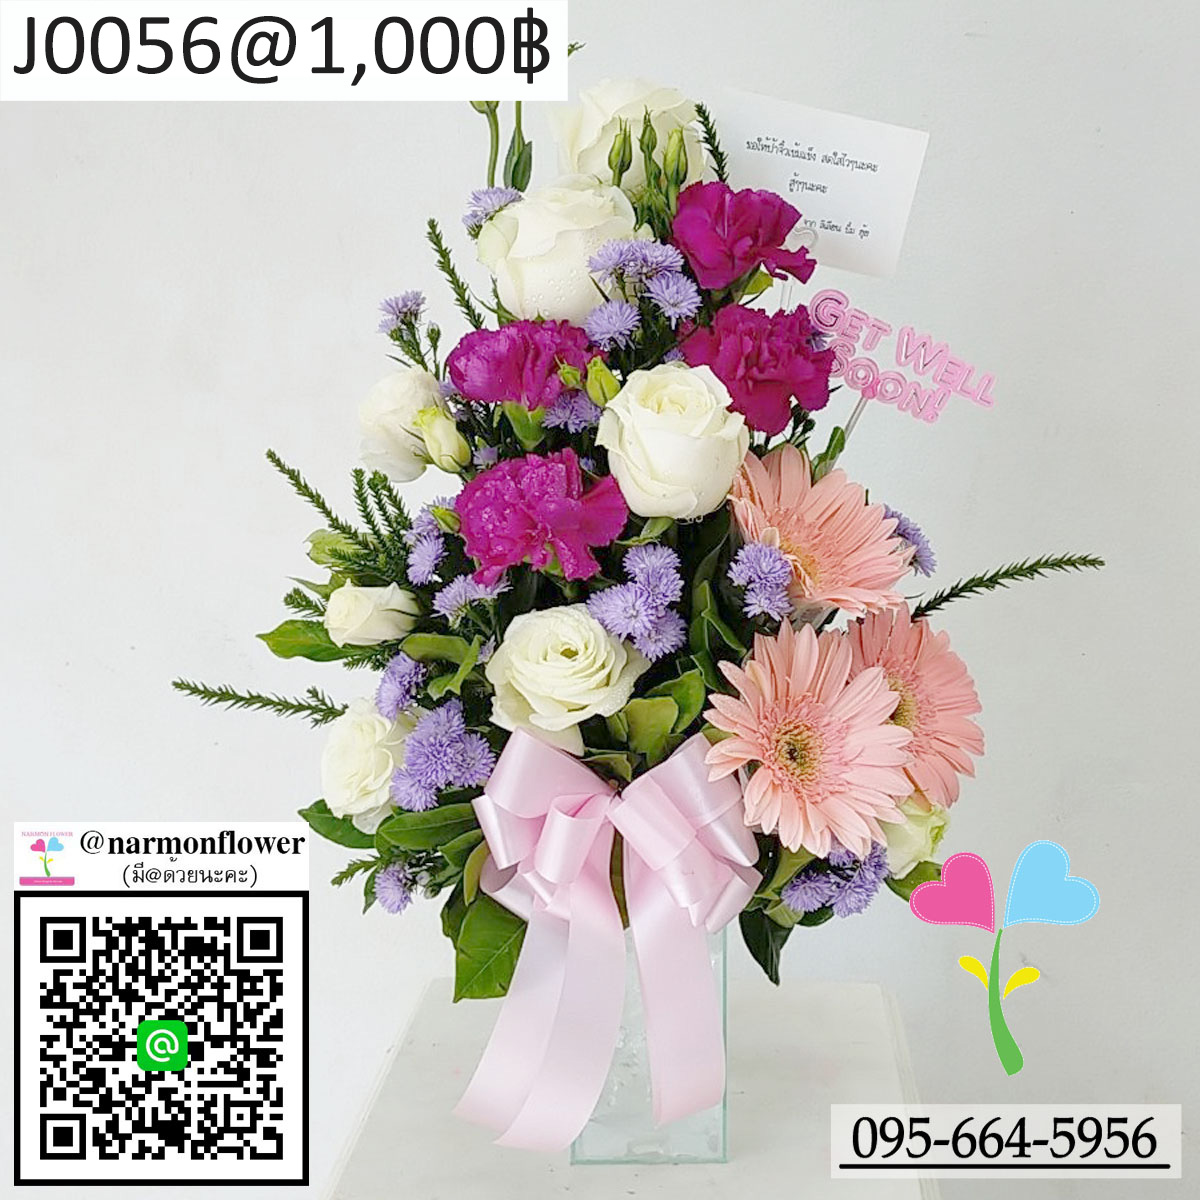 แจกันดอกไม้สด J0056